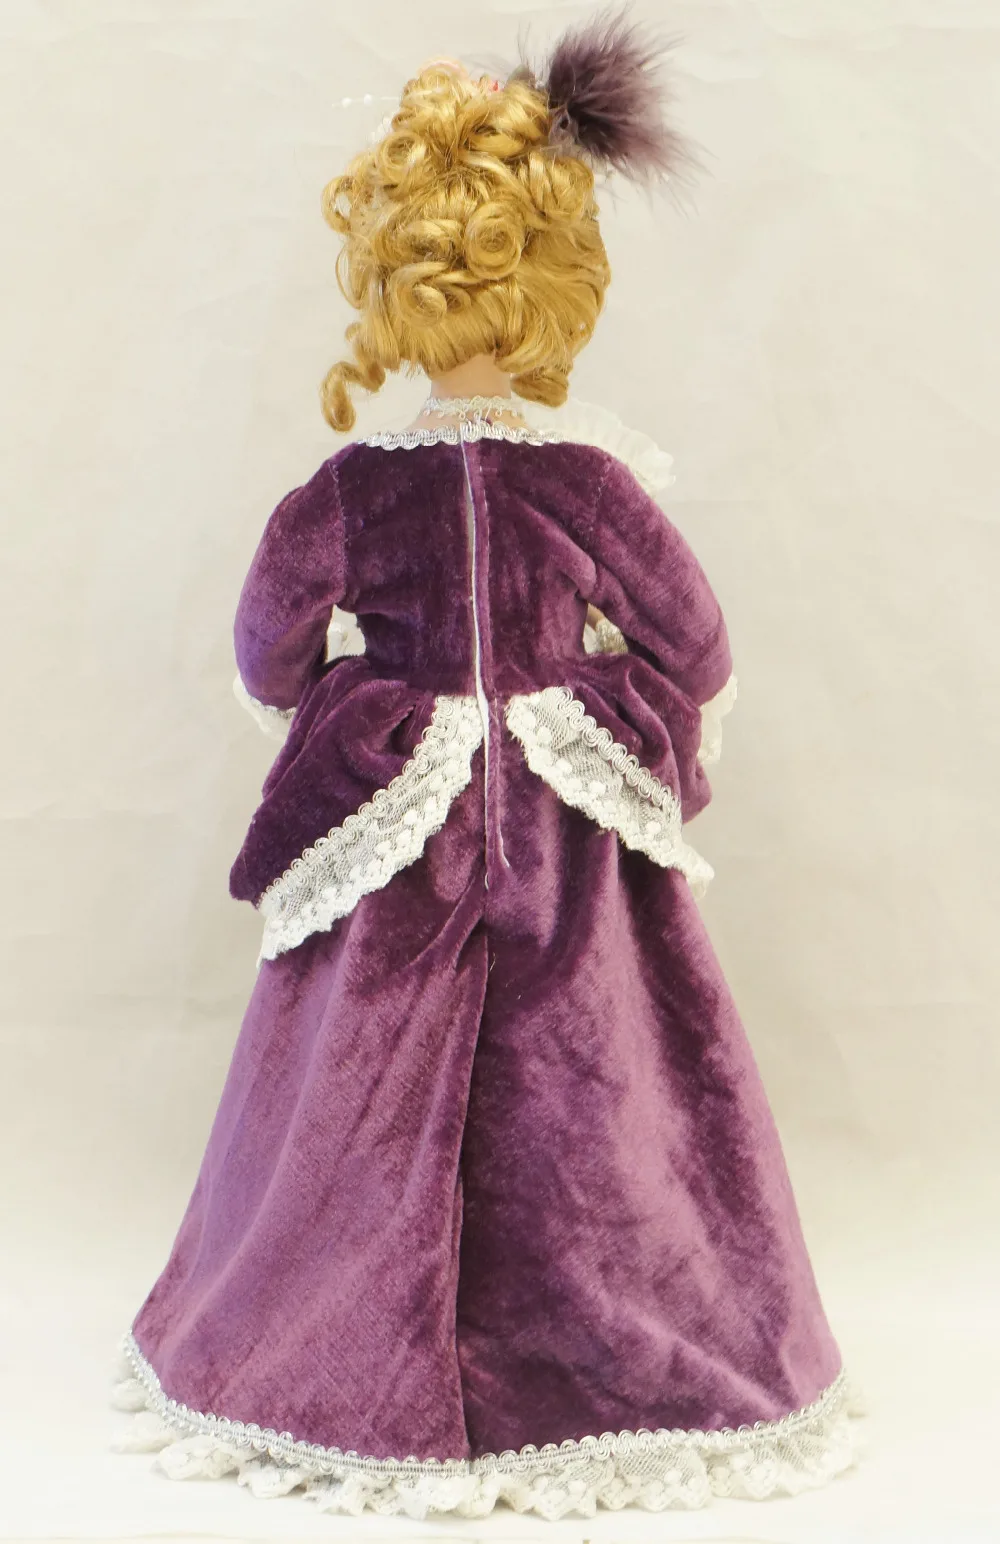 Козетта фарфор классическая кукла леди Винтаж 14 дюймов.(около 35 см) украшение дома рождественские подарки фигура